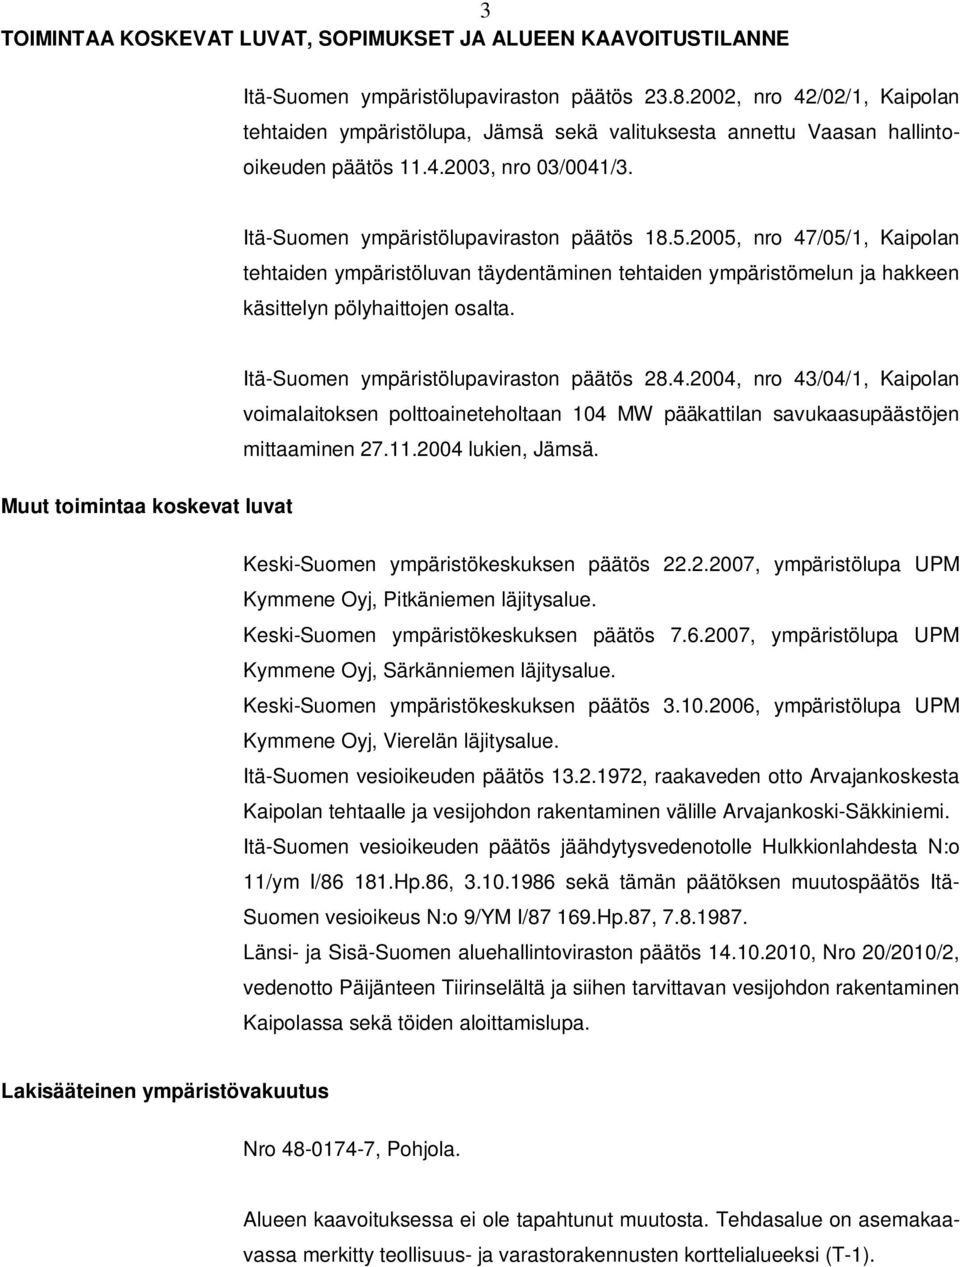 2005, nro 47/05/1, Kaipolan tehtaiden ympäristöluvan täydentäminen tehtaiden ympäristömelun ja hakkeen käsittelyn pölyhaittojen osalta. Itä-Suomen ympäristölupaviraston päätös 28.4.2004, nro 43/04/1, Kaipolan voimalaitoksen polttoaineteholtaan 104 MW pääkattilan savukaasupäästöjen mittaaminen 27.